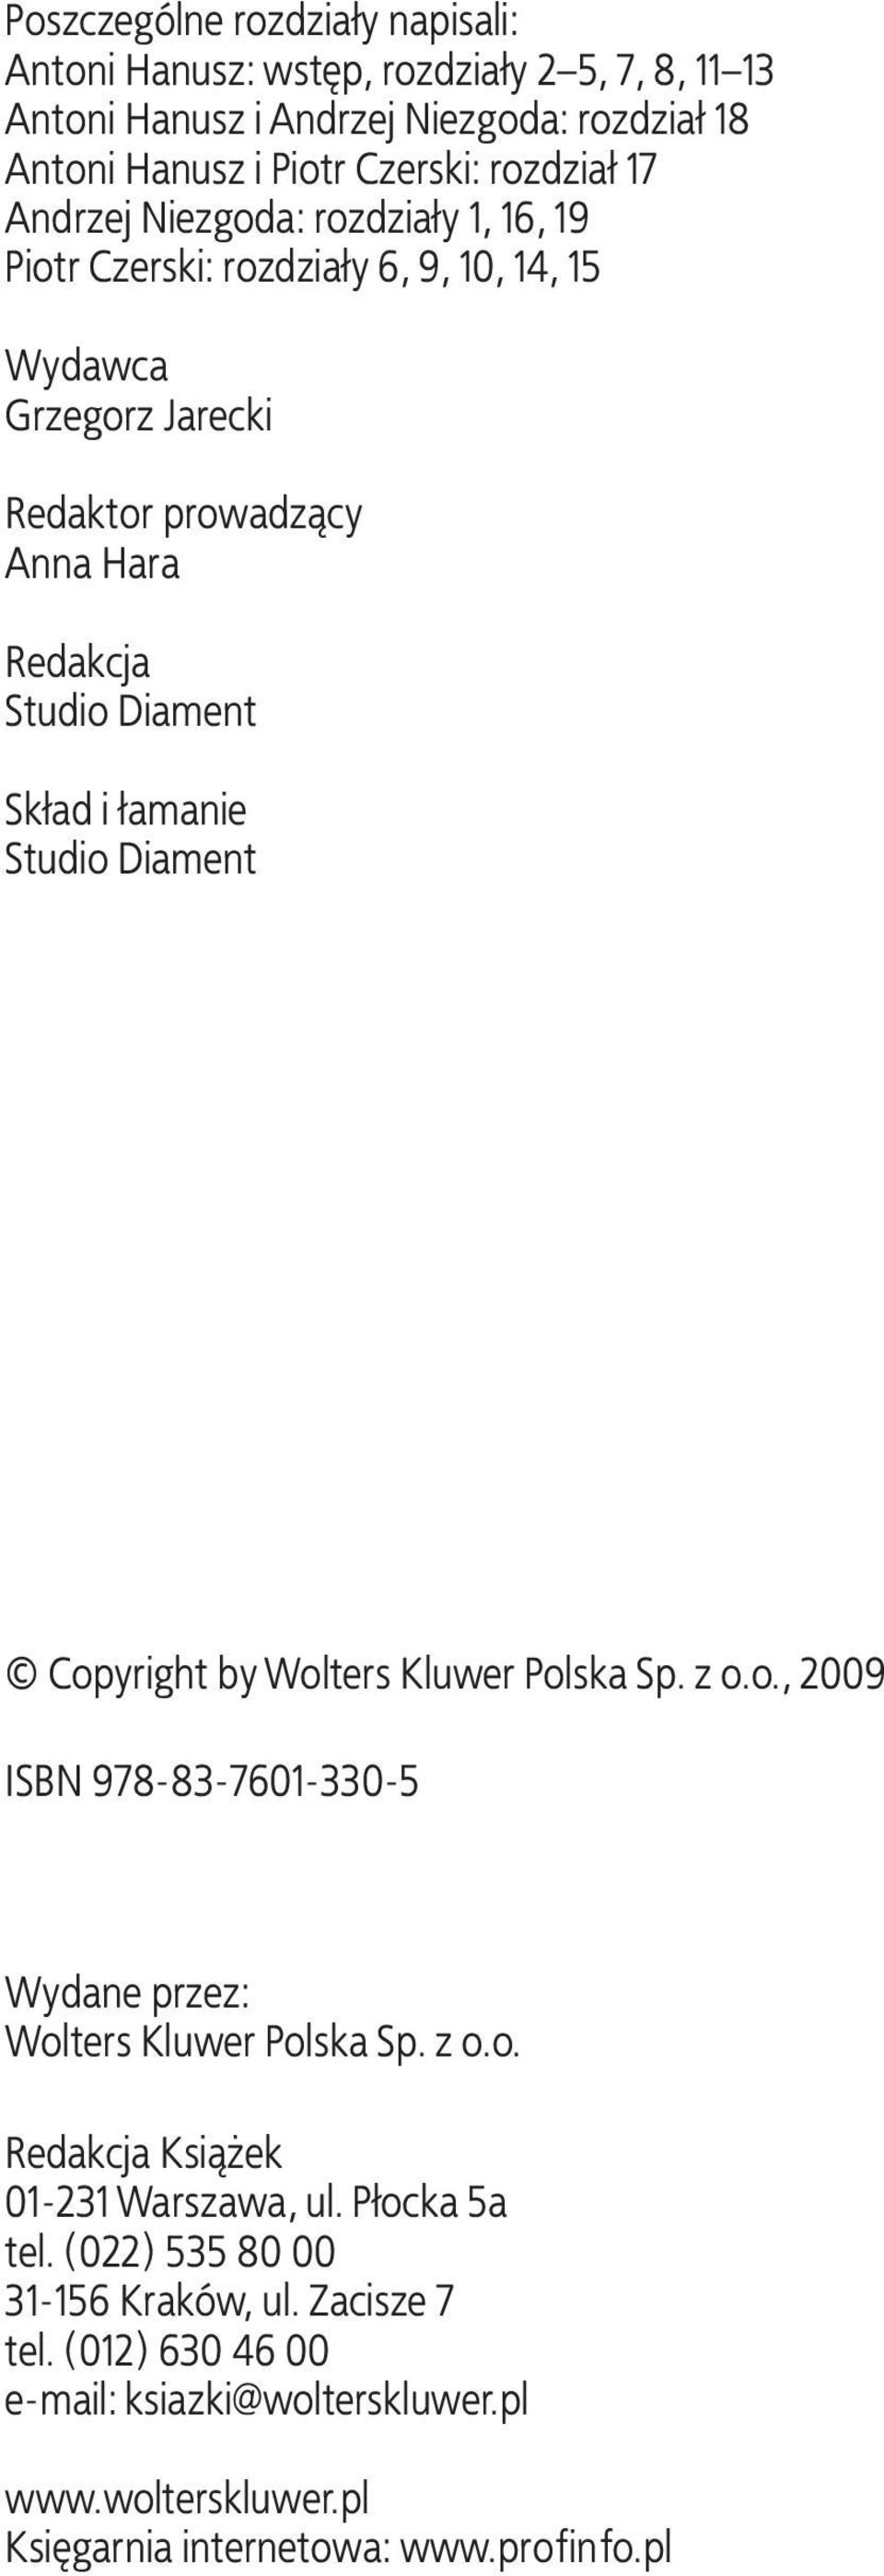 łamanie Studio Diament Copyright by Wolters Kluwer Polska Sp. z o.o., 2009 ISBN 978-83-7601-330-5 Wydane przez: Wolters Kluwer Polska Sp. z o.o. Redakcja Książek 01-231 Warszawa, ul.